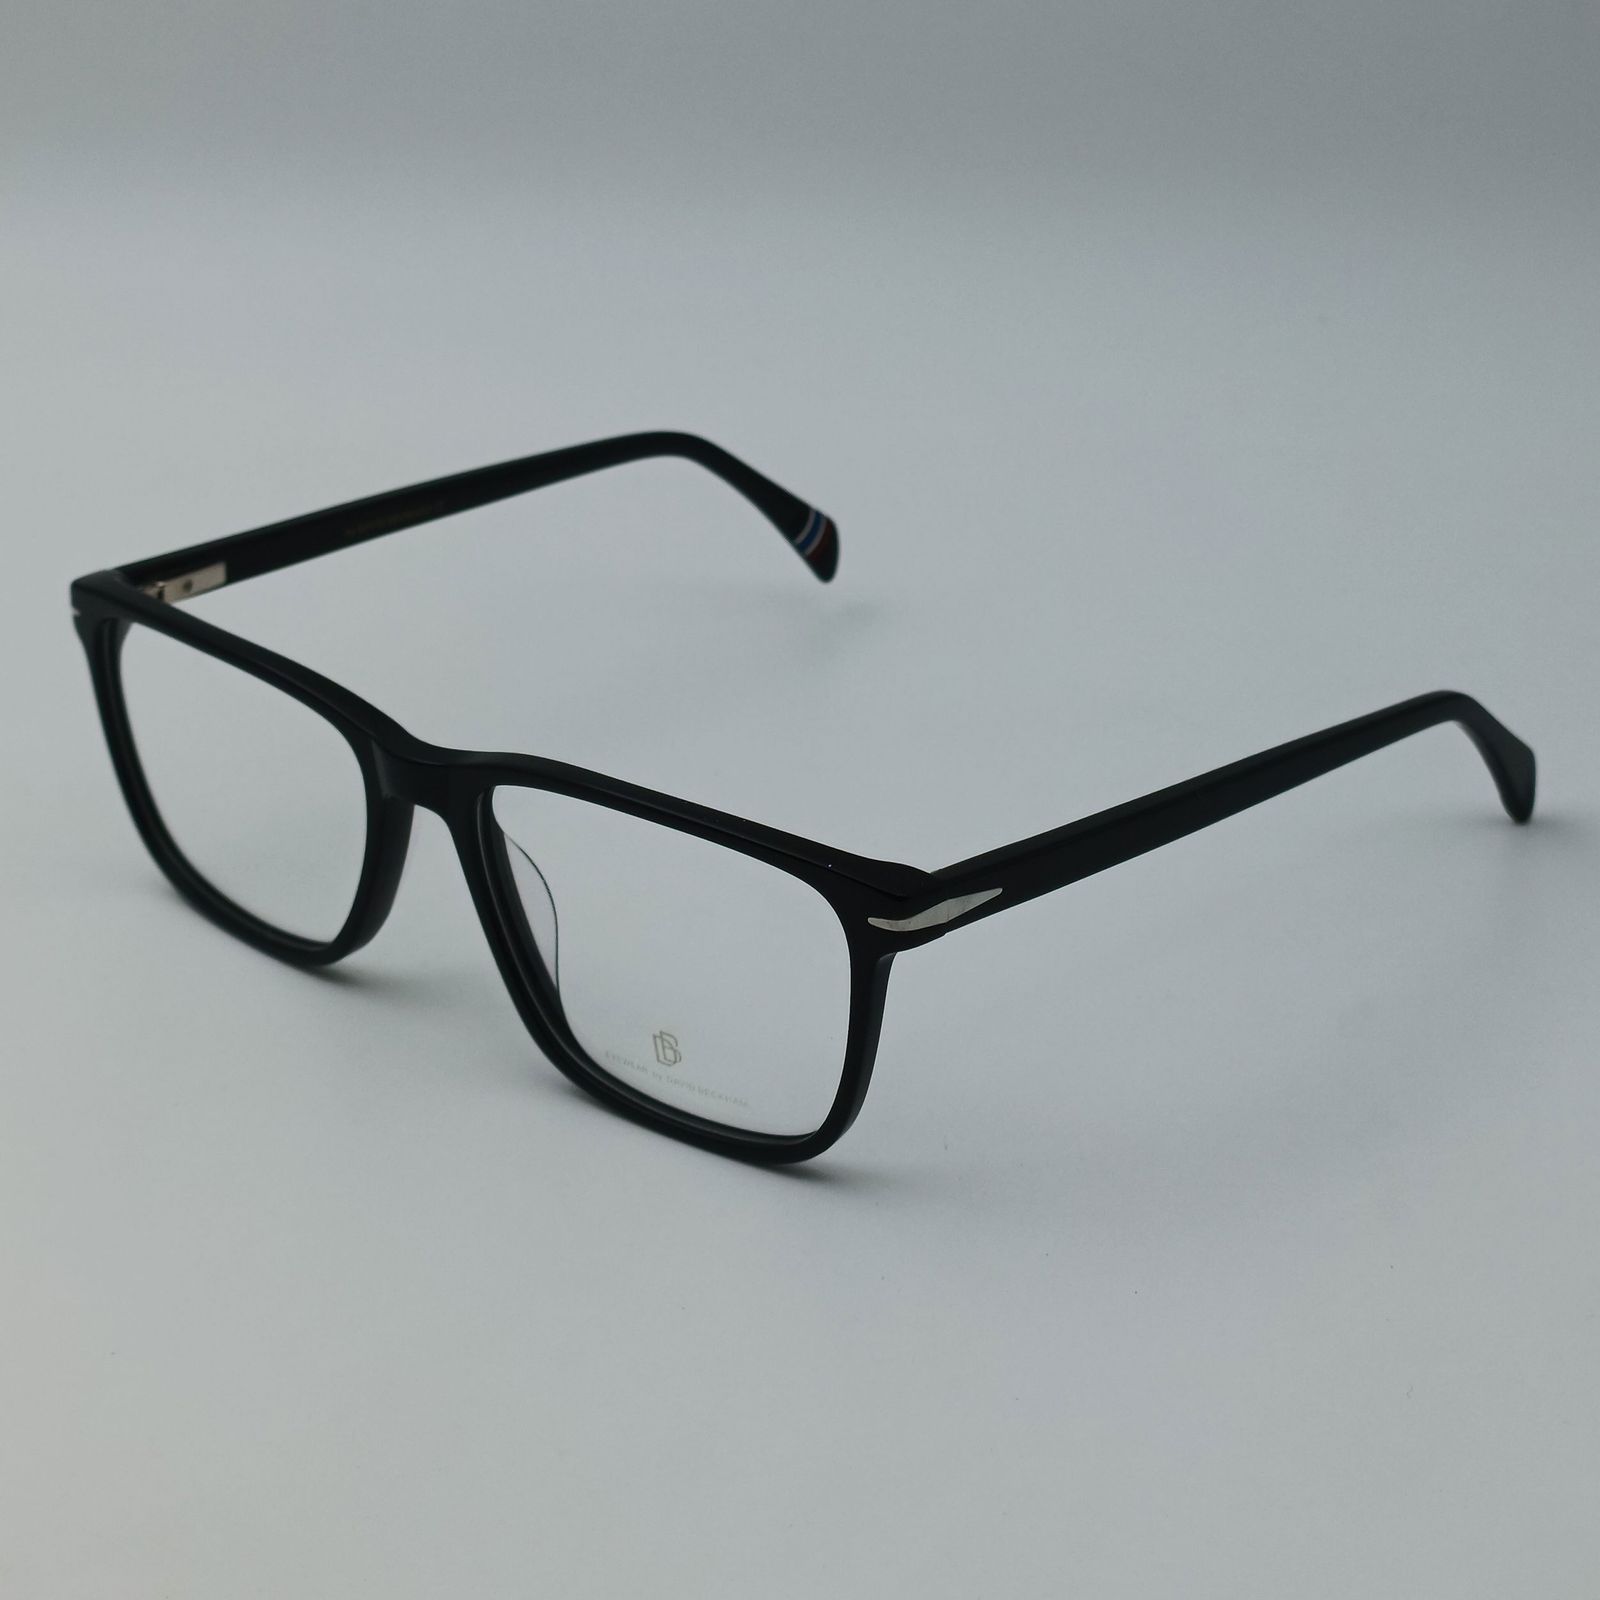 فریم عینک طبی دیوید بکهام مدل 7805 C1 -  - 3